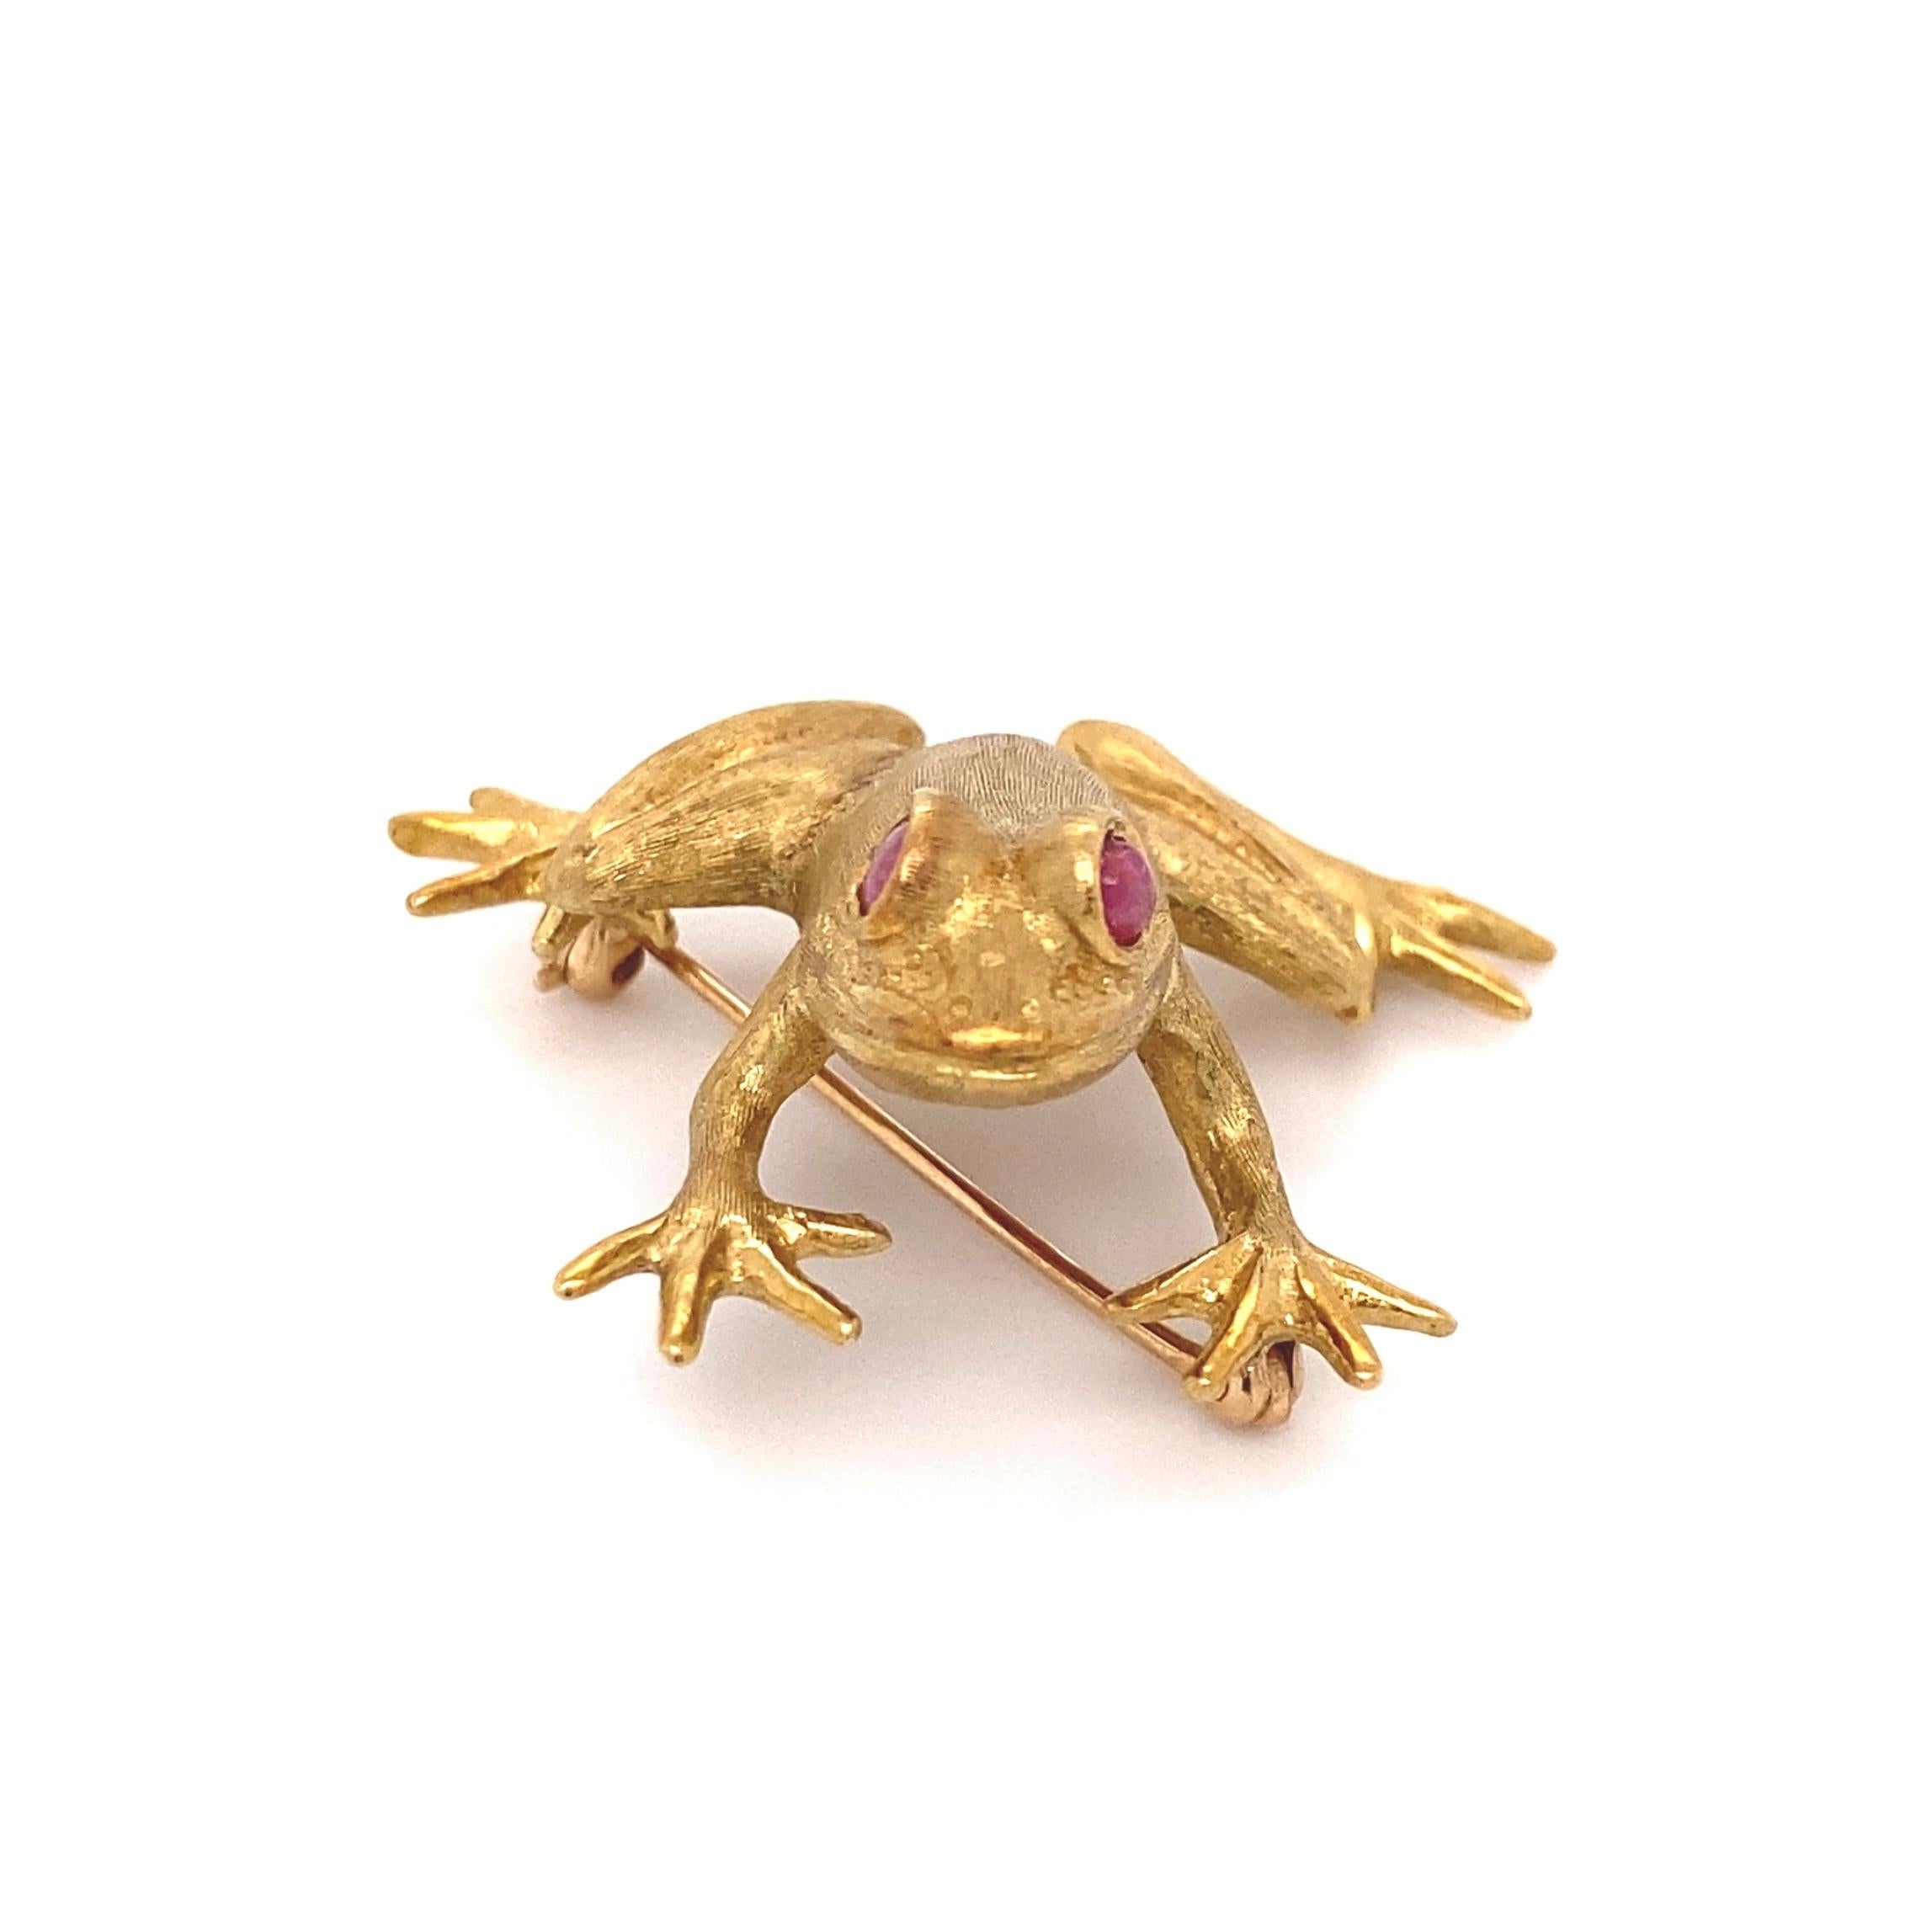 Tout simplement magnifique ! Broche finement détaillée, signée par un designer, représentant une grenouille aux yeux de rubis. Fabriqué à la main en or jaune 18 carats. Signé et marqué : 